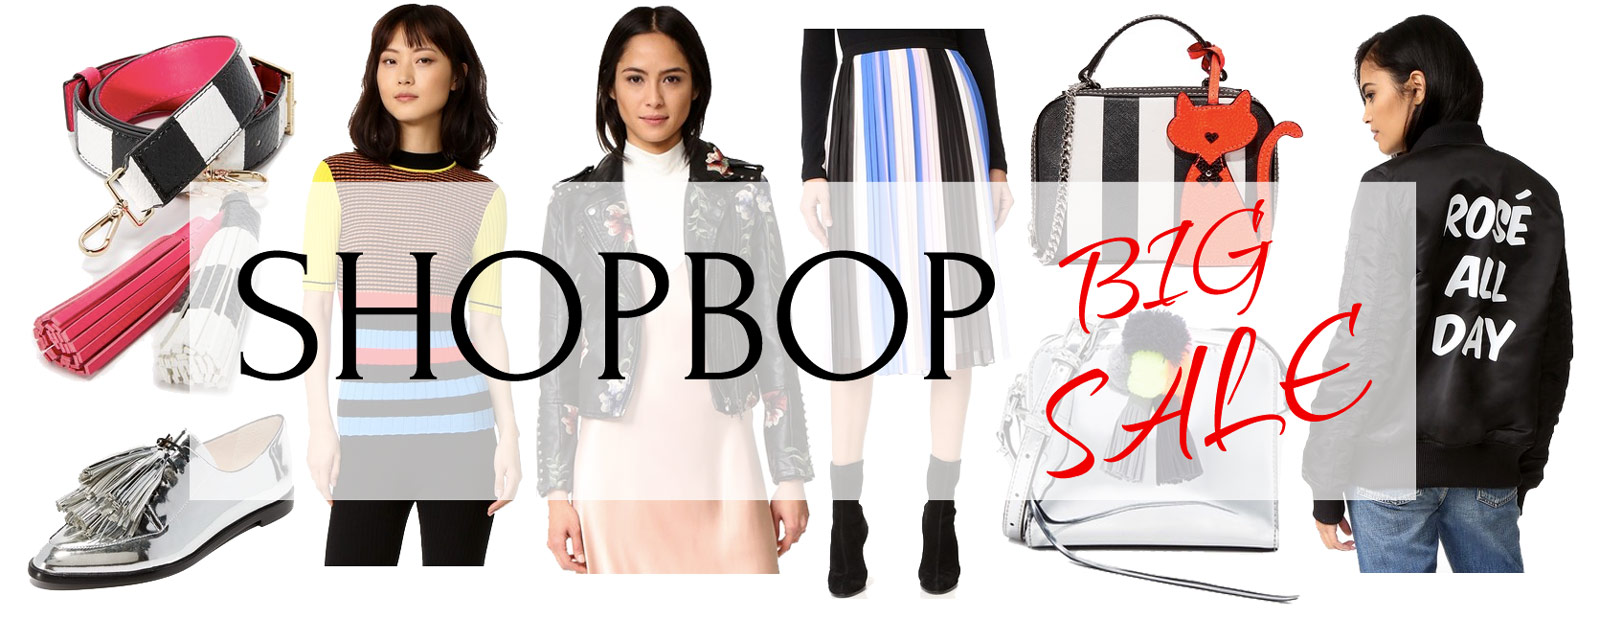 shopbop-big-sale